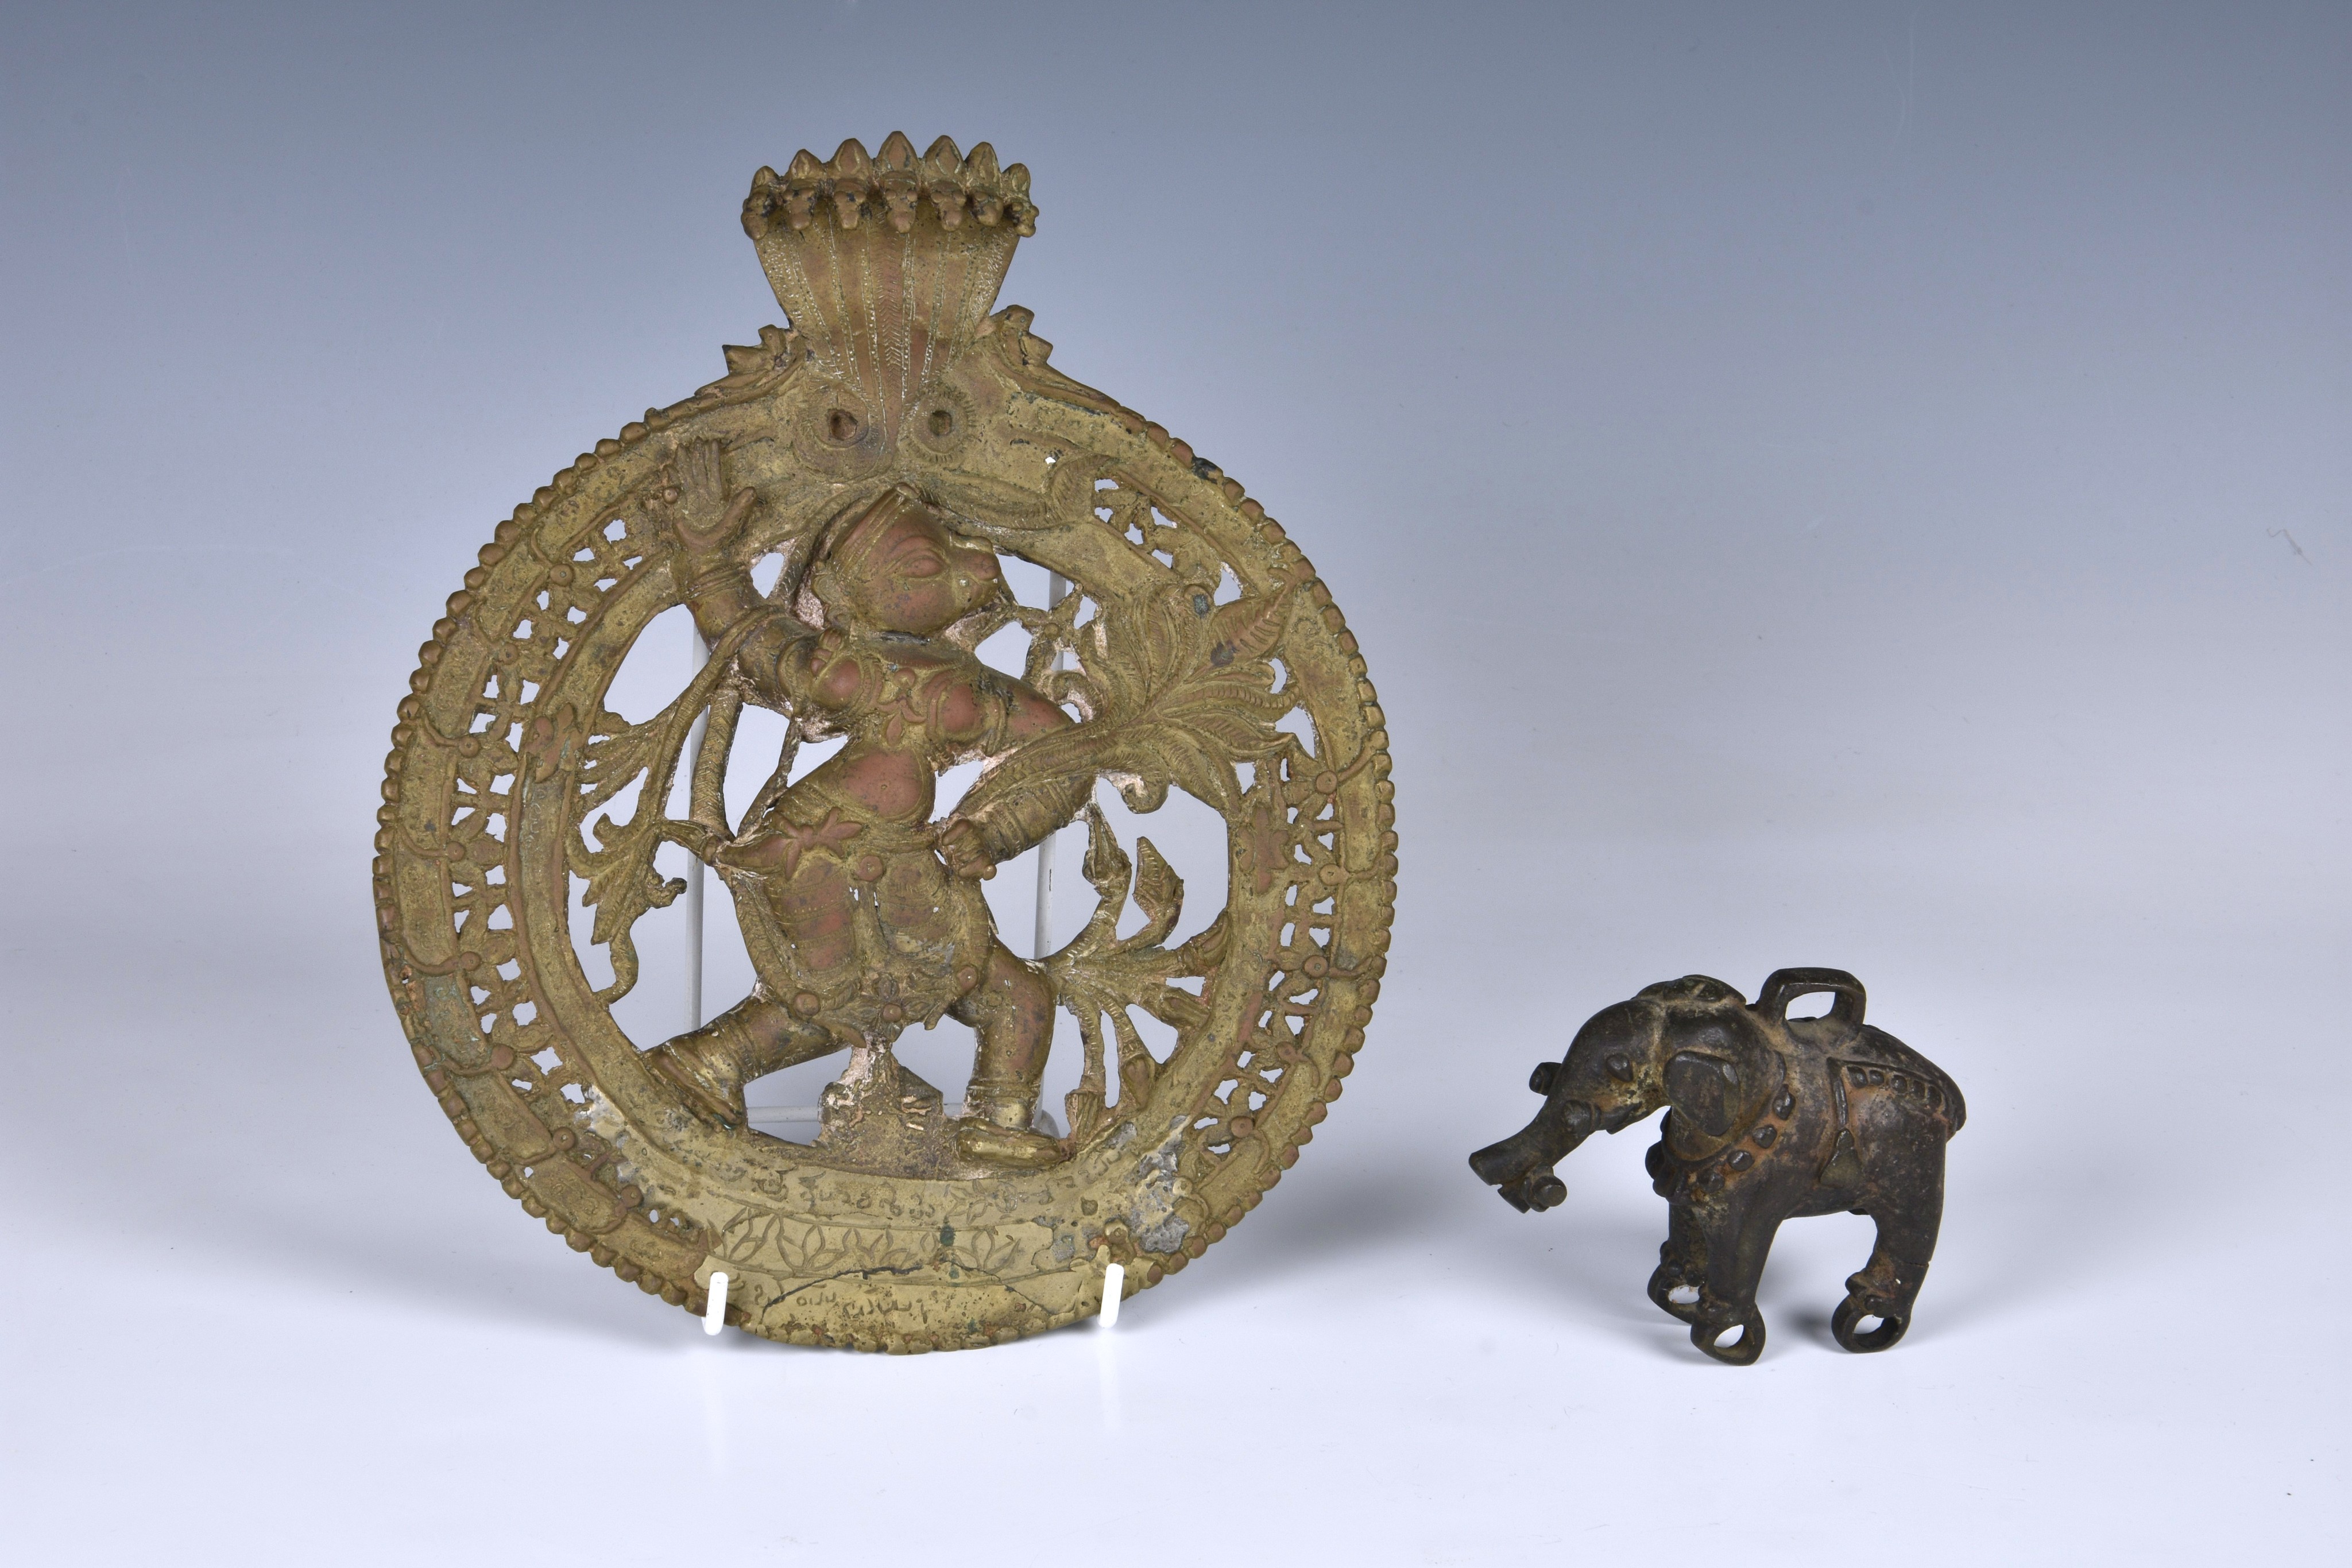 An Indian bronze circular wall plaque of the Hindu monkey headed deity Hanuman